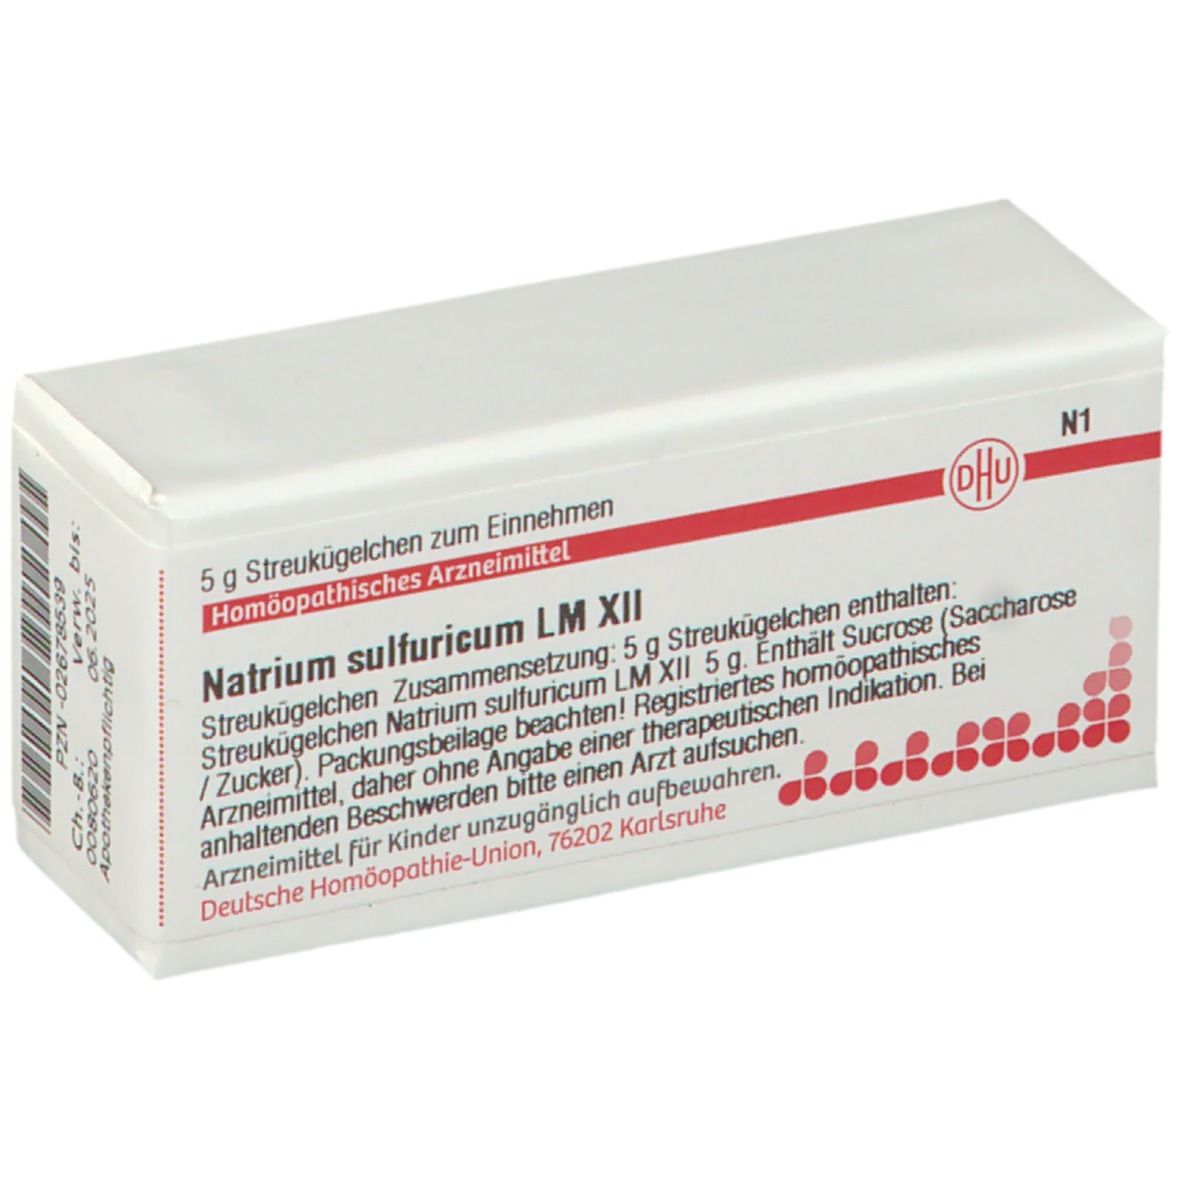 DHU Natrium Sulfuricum LM XII